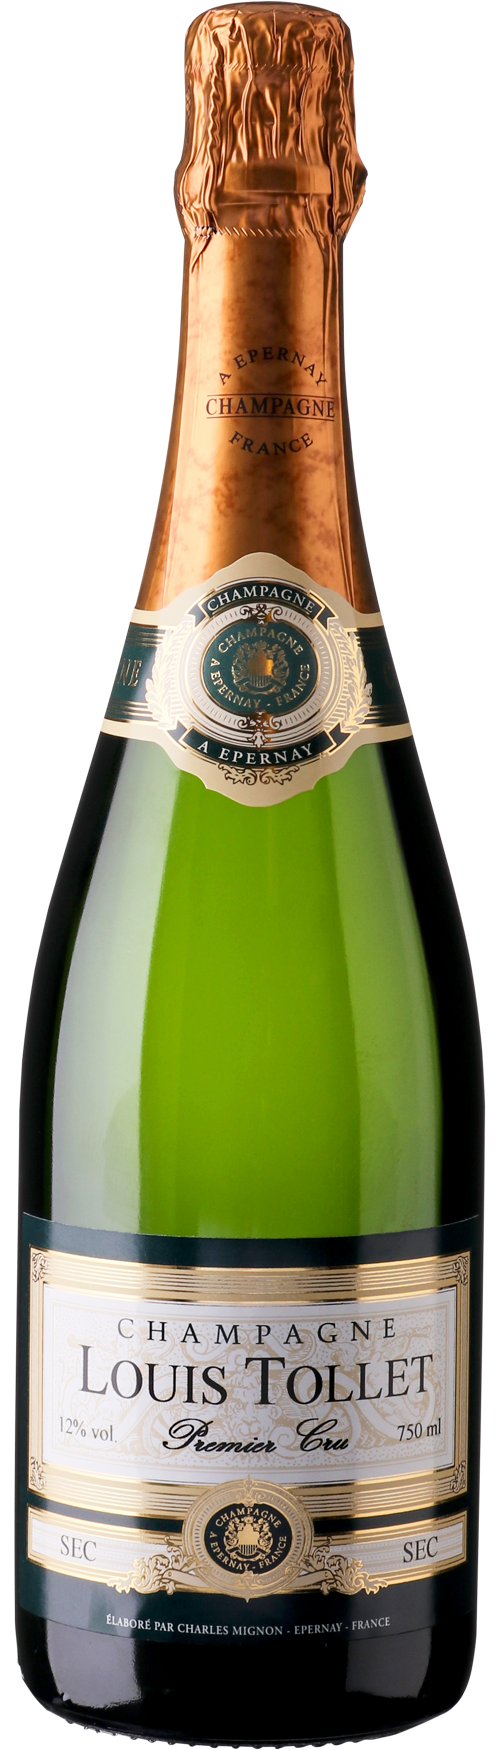 Champagne 1. cru SEC Cuvée Prestige